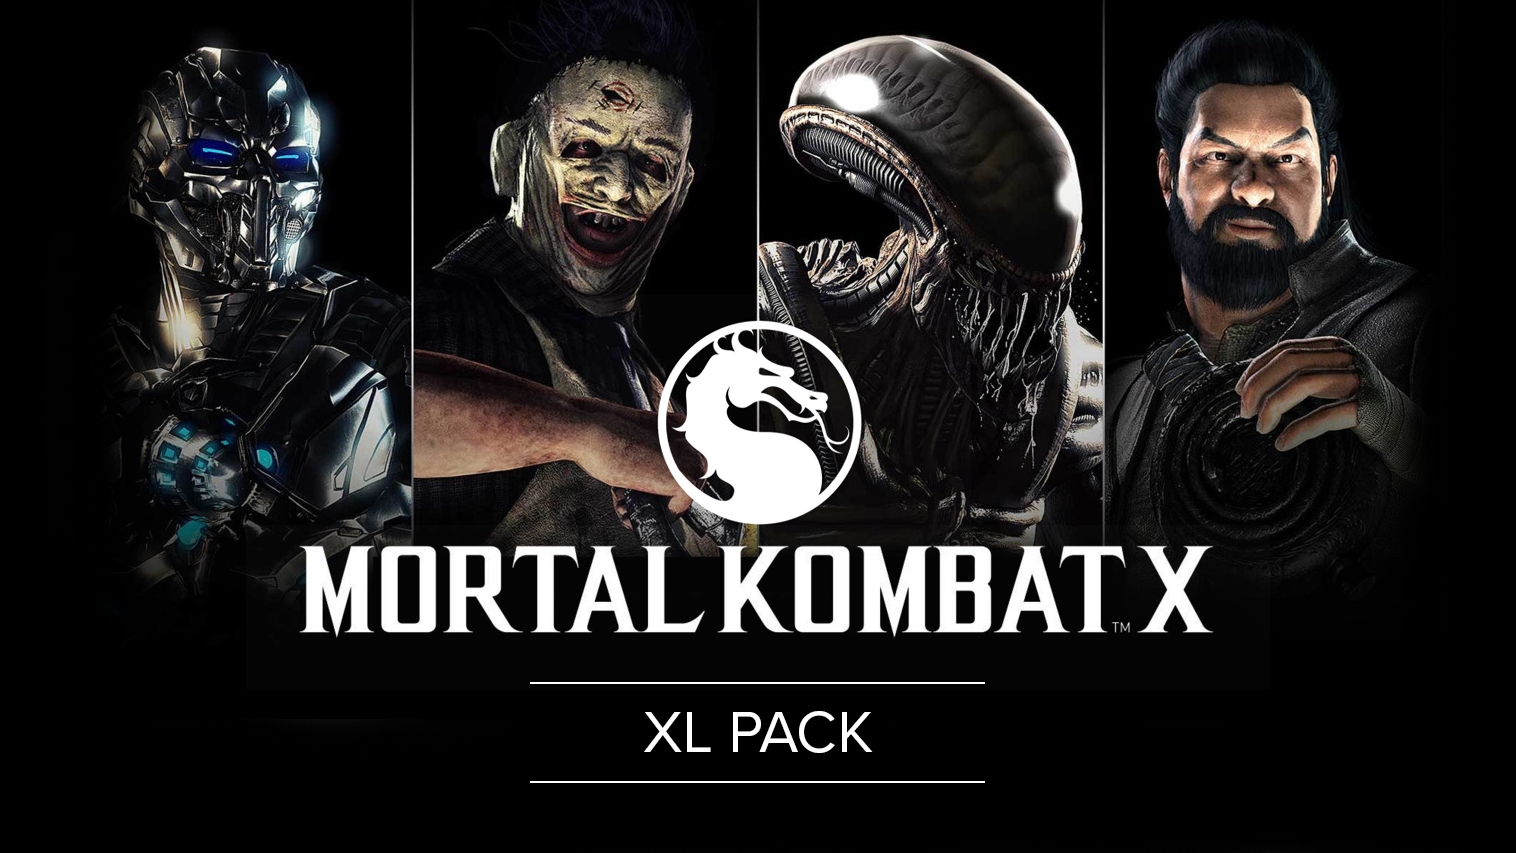 Mortal kombat x updates steam фото 11